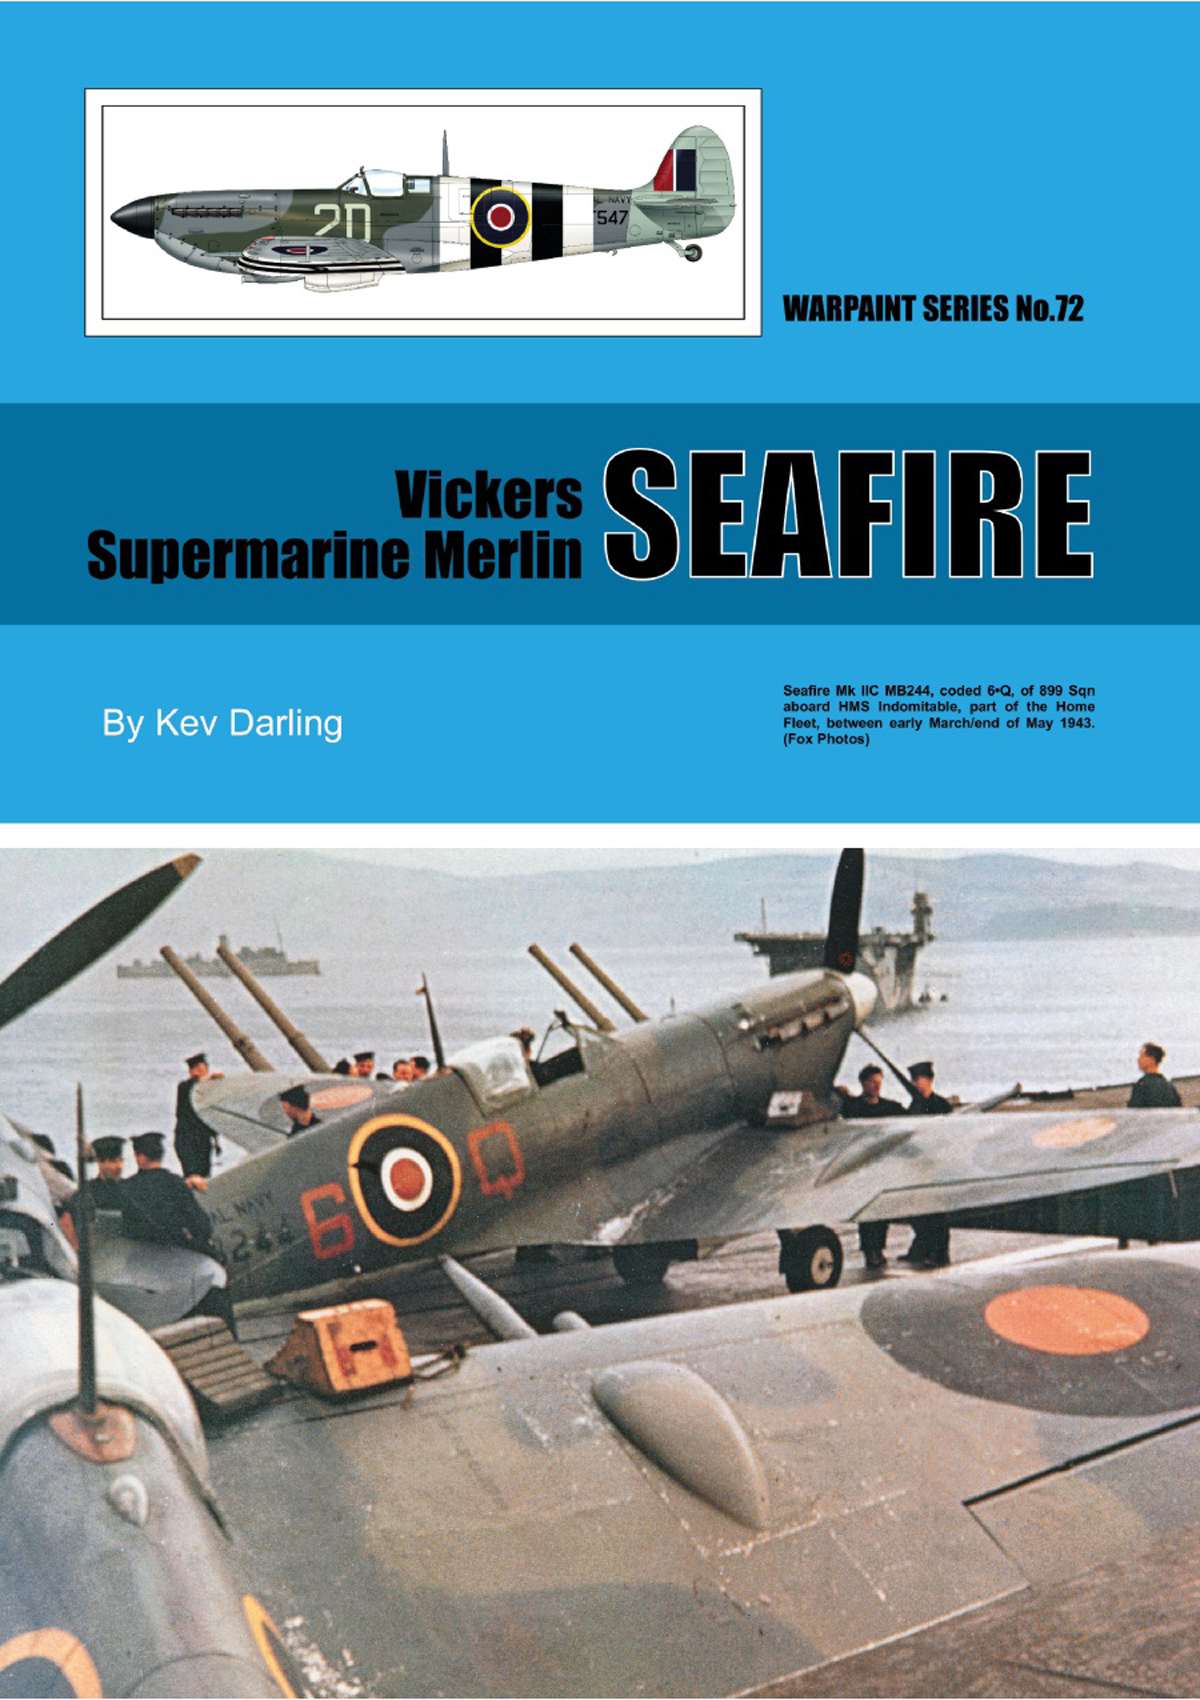 N72 - Vickers Supermarine Merlin Seafire